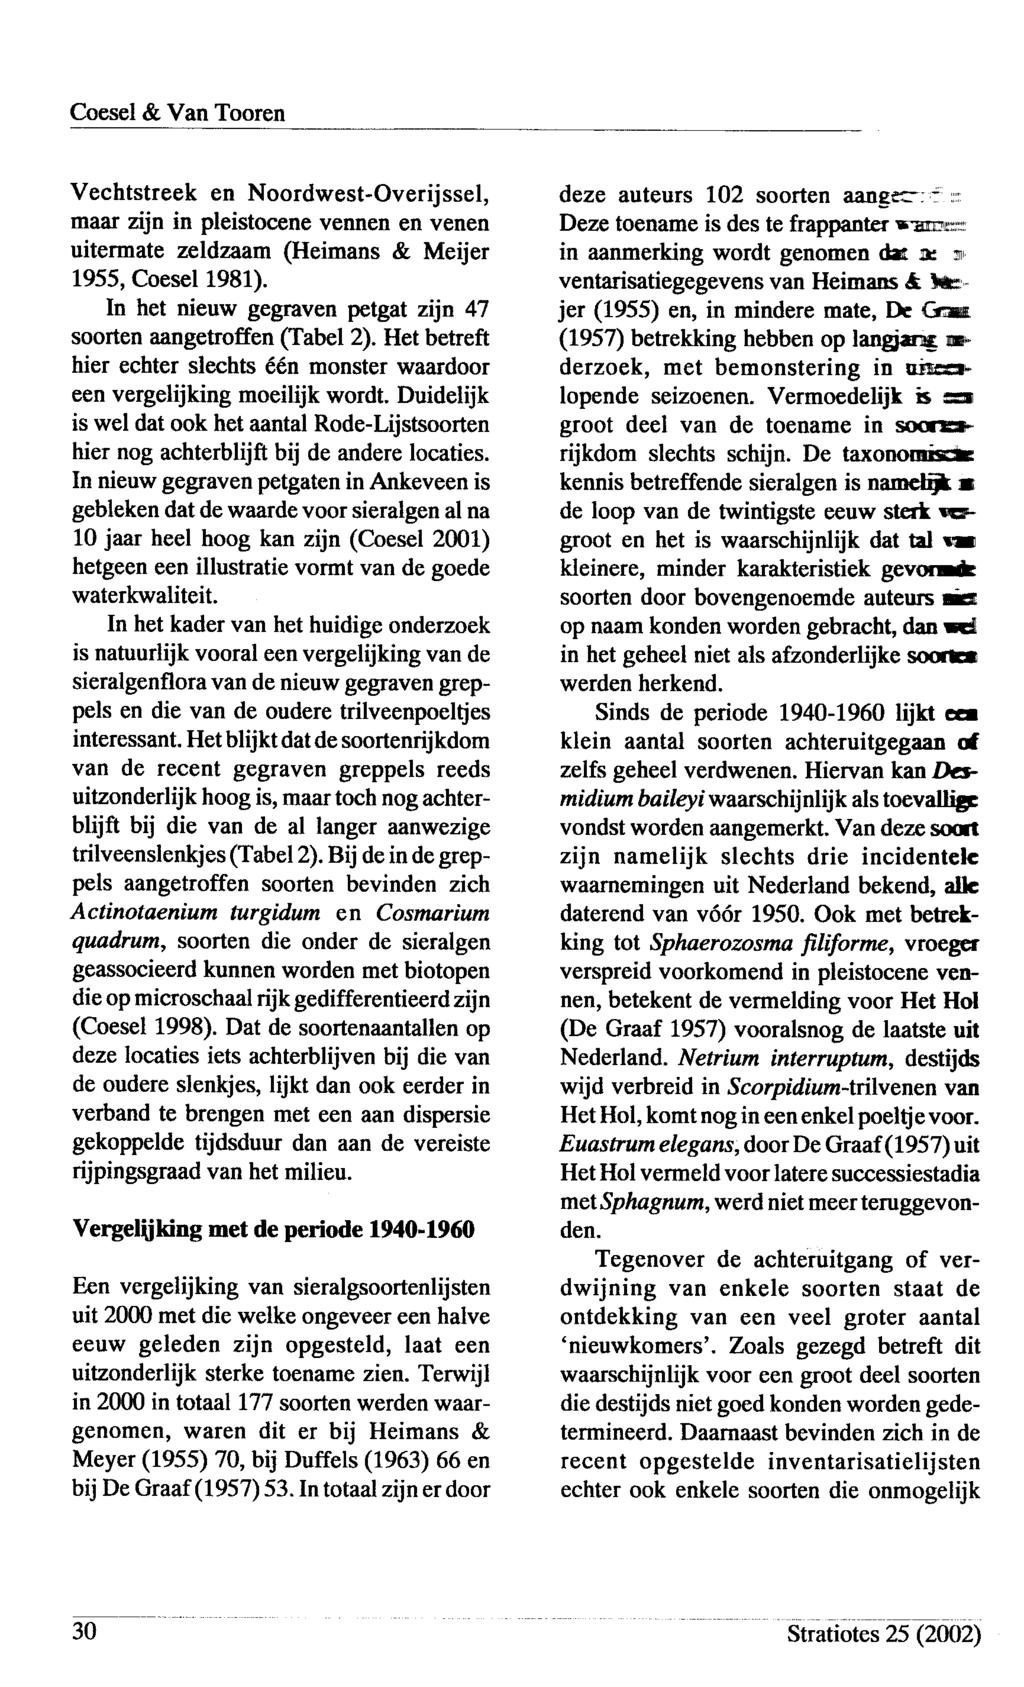 Vechtstreek en Noordwest-Overijssel, maar zijn in pleistocene vennen en venen uitermate znldzaam (Heimans & Meijer L955, Coesel 1981).